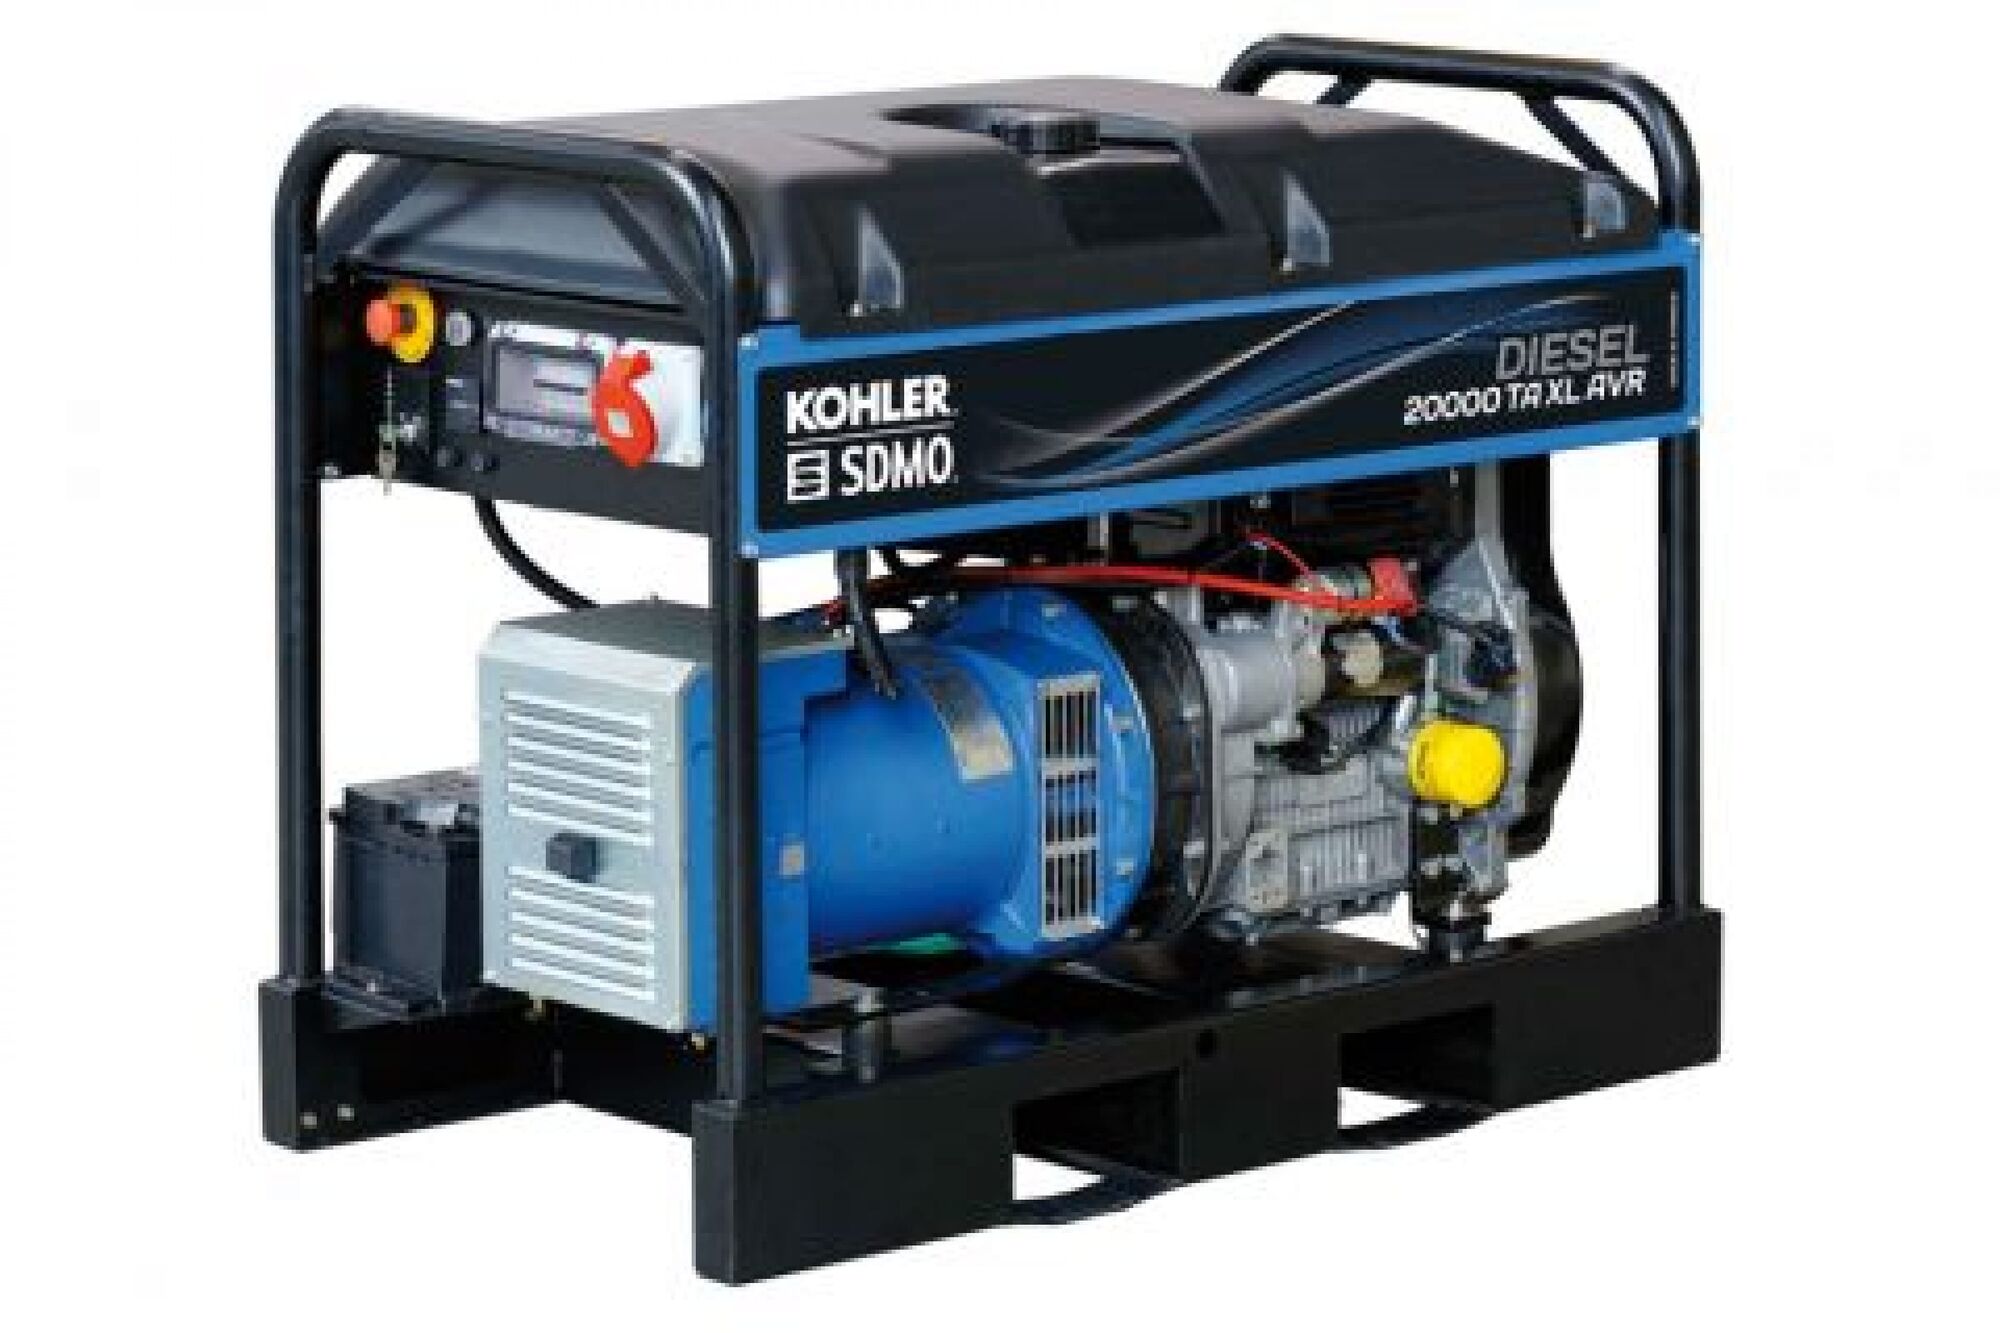 Дизельный генератор KOHLER-SDMO Diesel 20000 TA XL AVR 15 кВт, 380/220 В 101123099